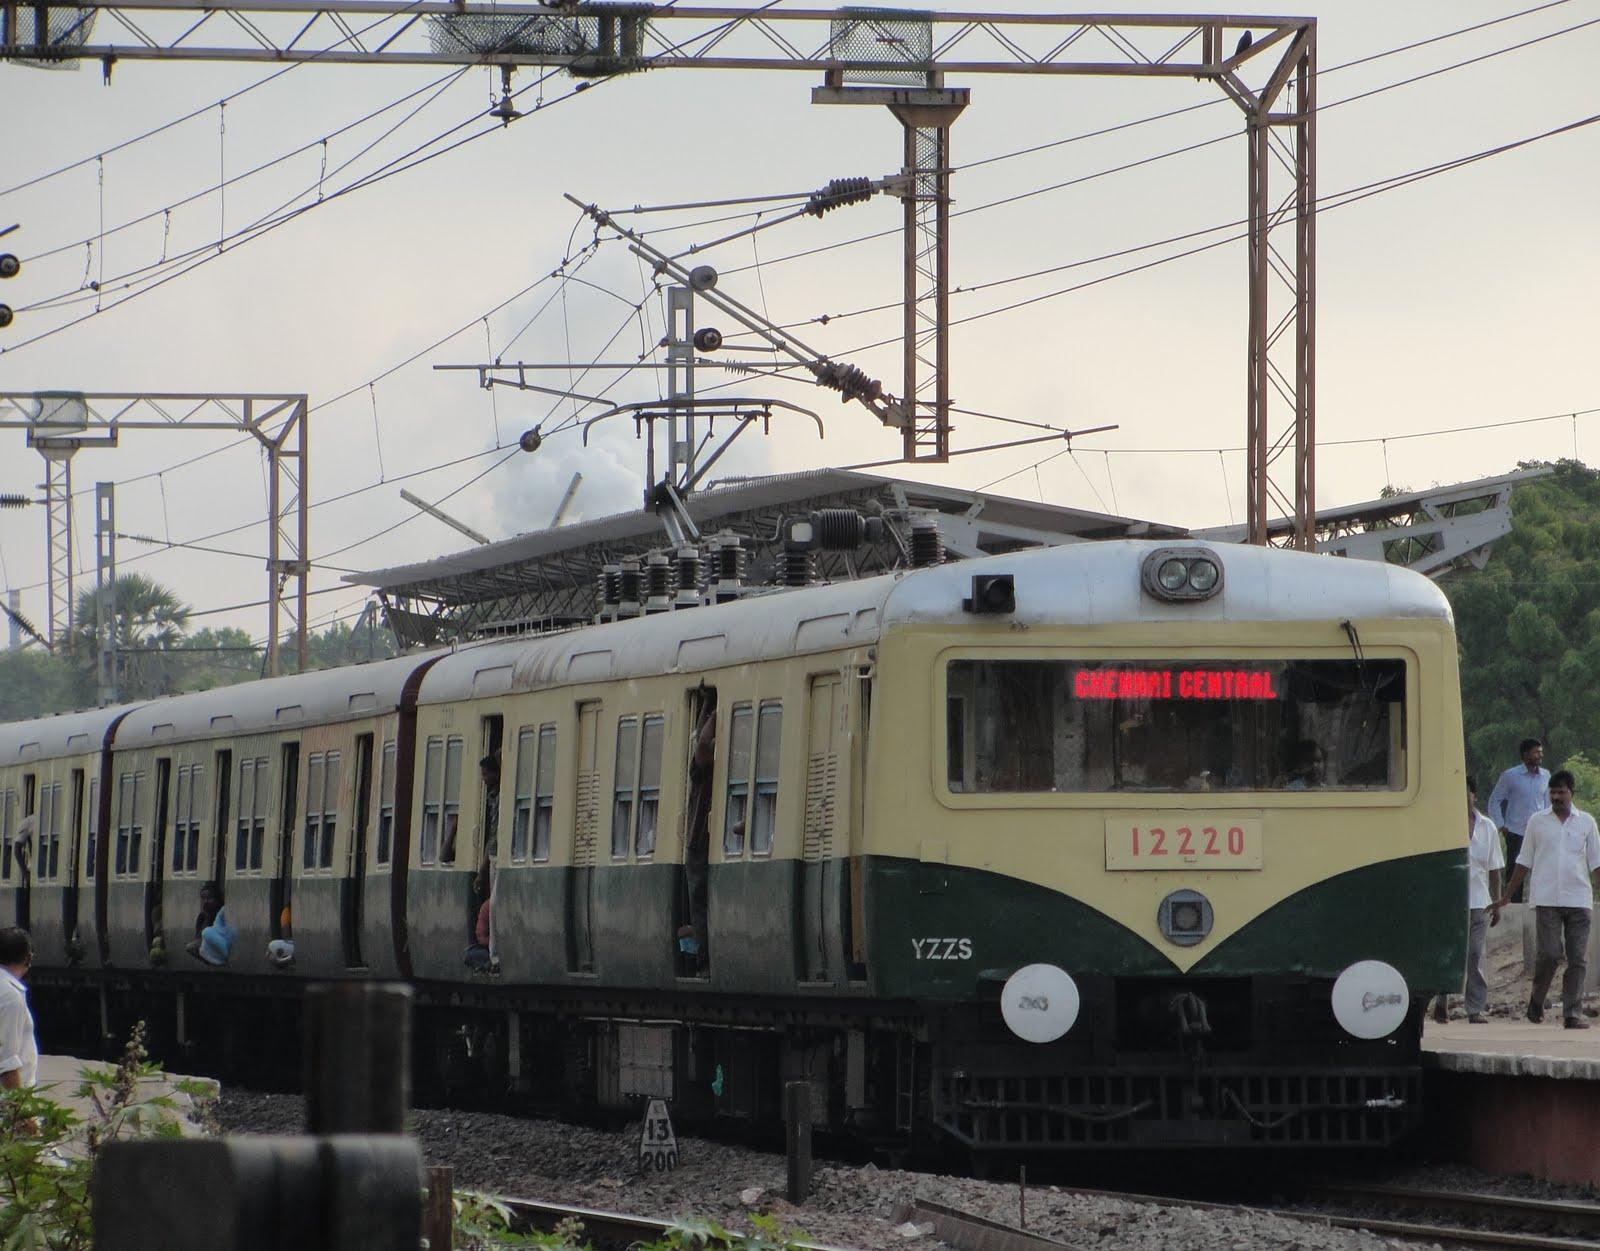  Chennai Suburban Railways.